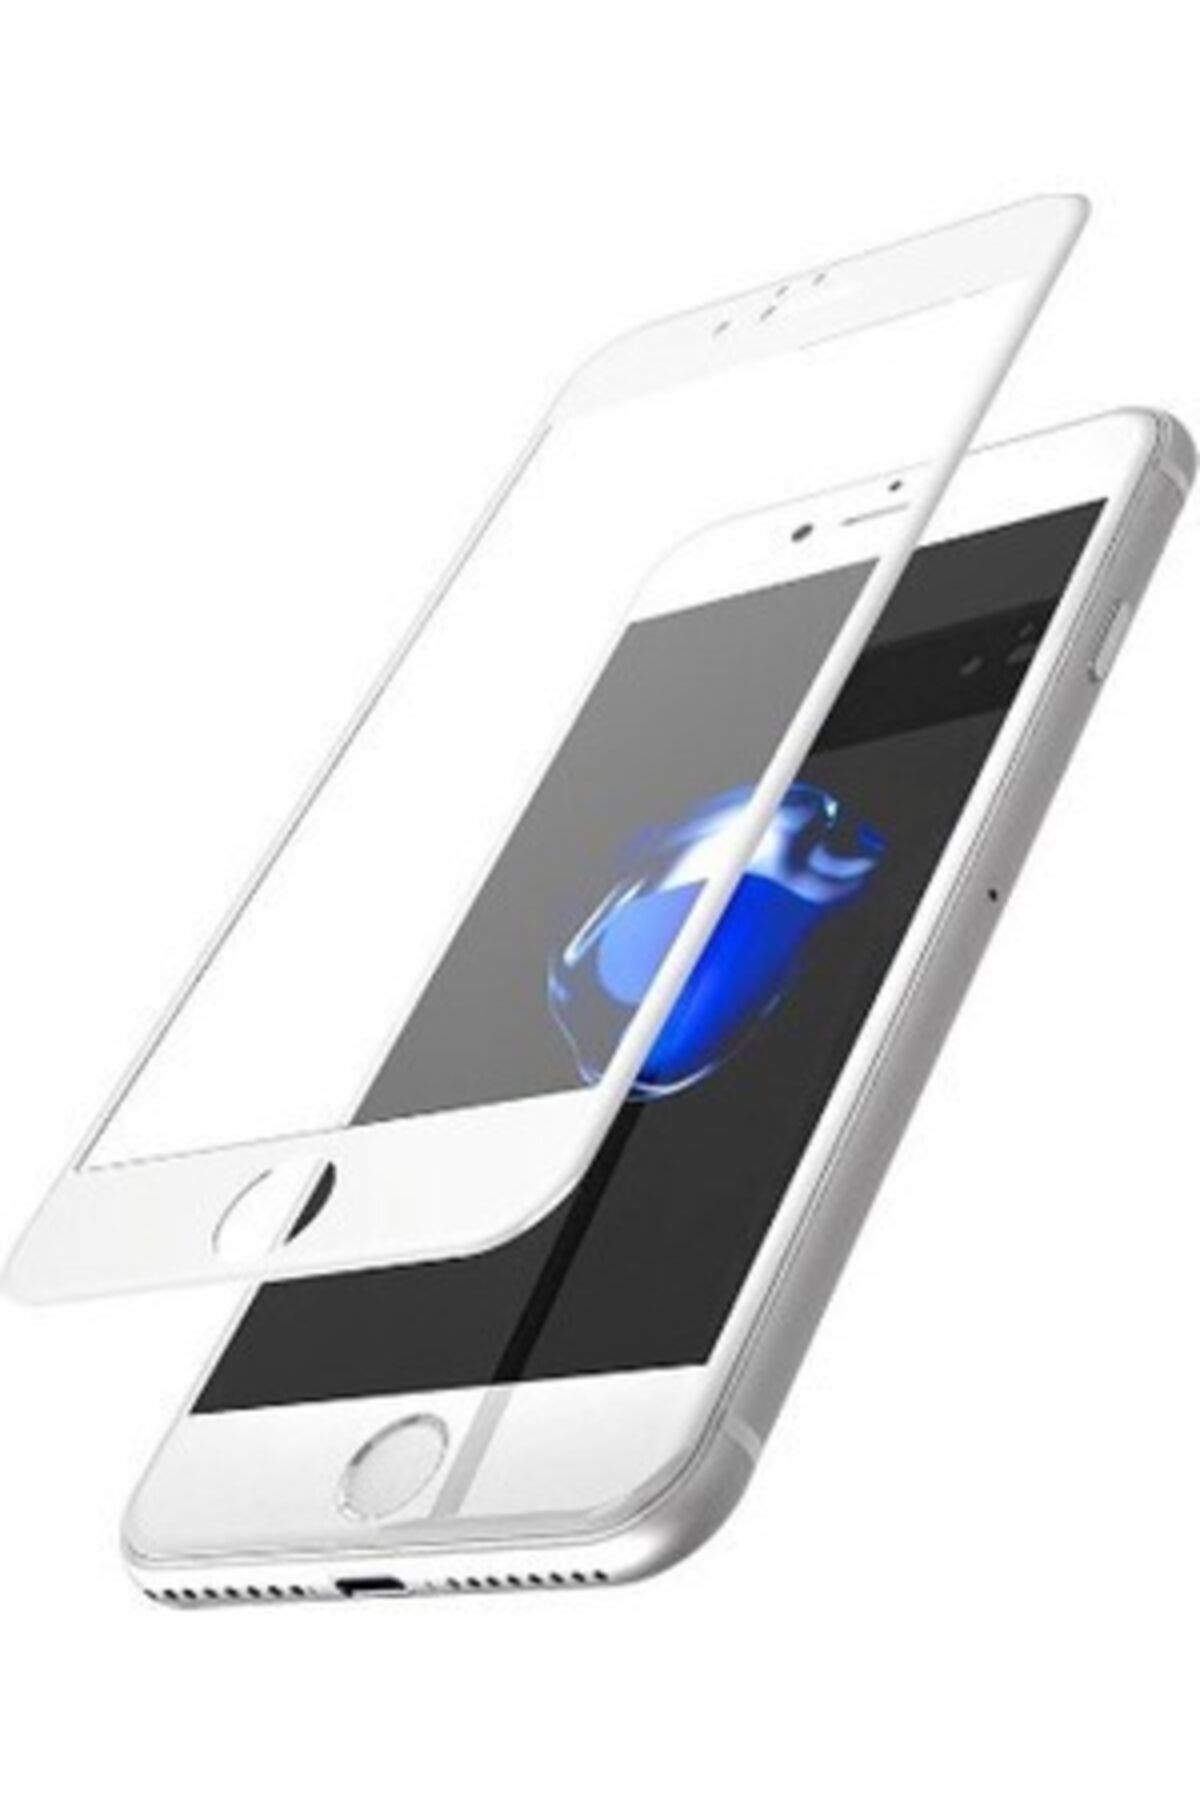 Go Aksesuar Iphone 7 -8 Beyaz Renk Tam Kaplayan Kırılmaz Cam Ekran Koruyucu